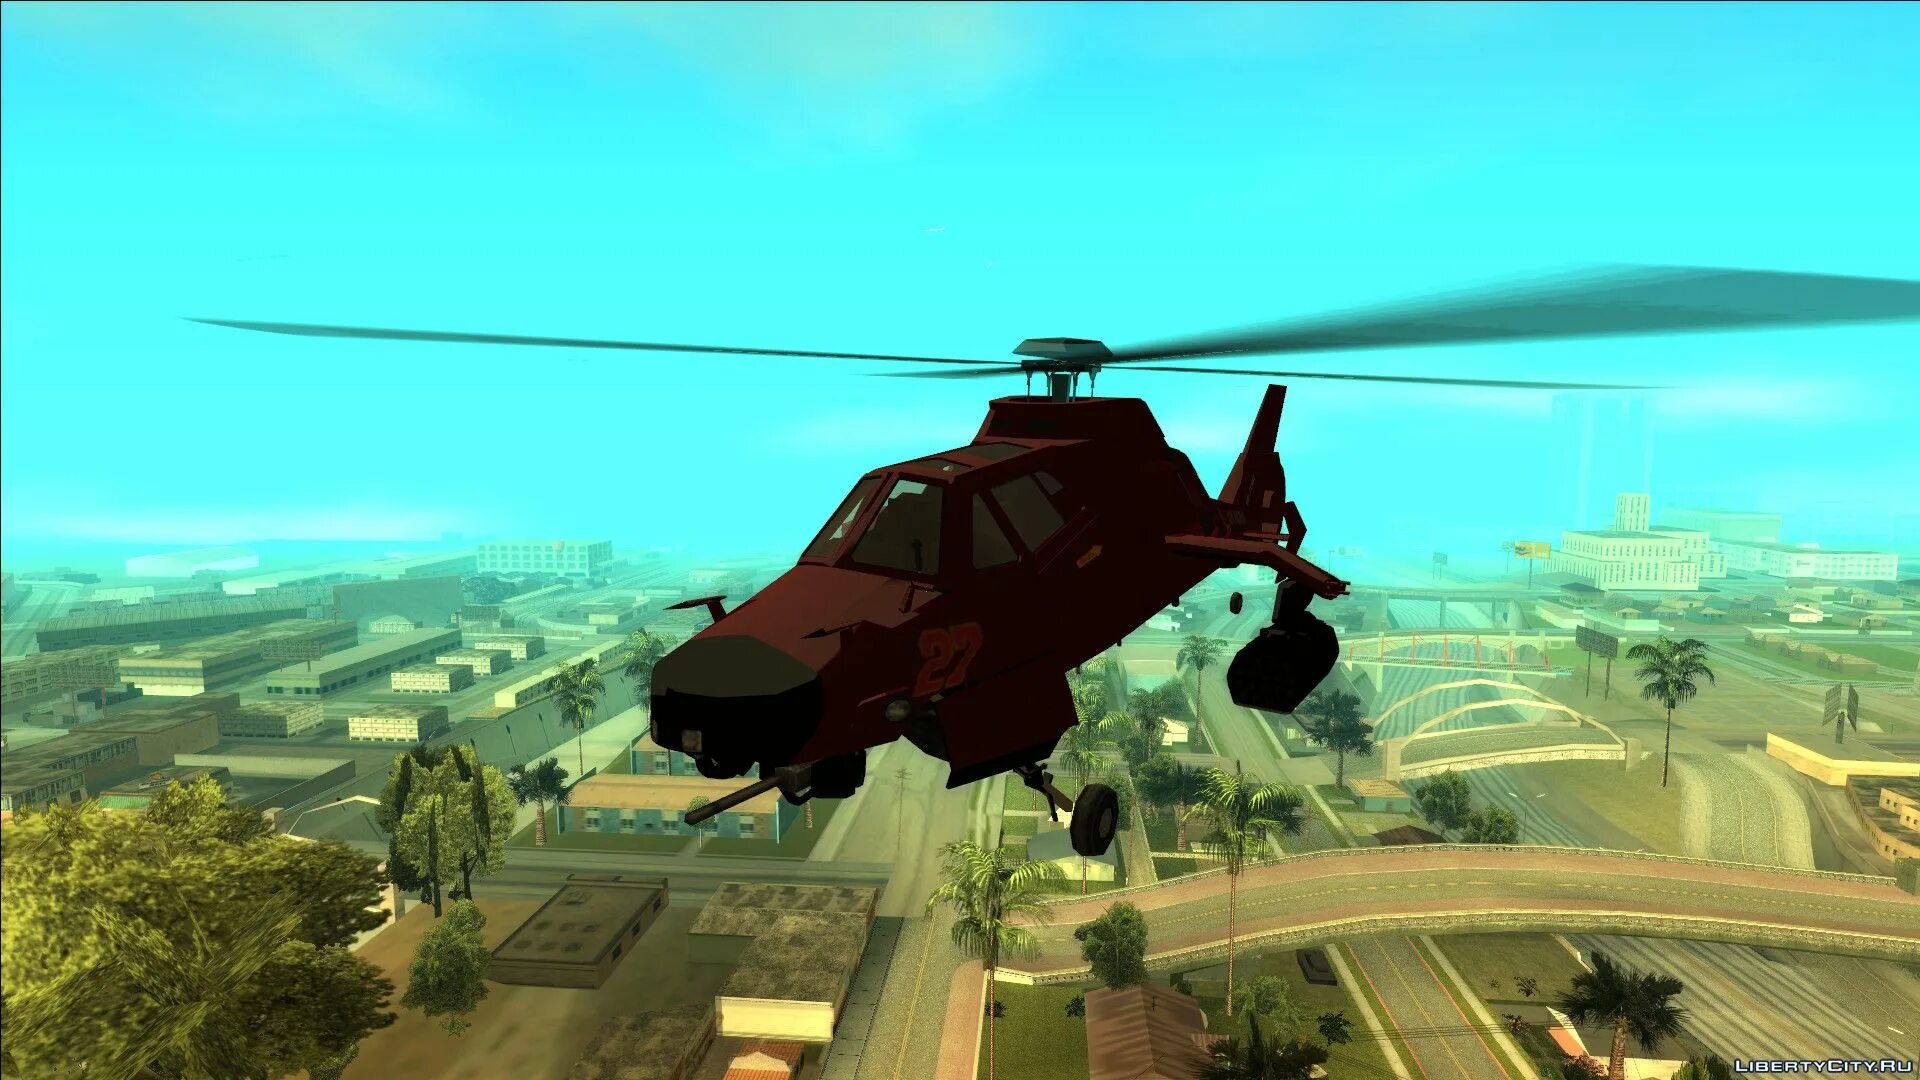 San andreas вертолет. GTA 5 Akula вертолет. Вертолет из ГТА Сан андреас. Акула ГТА 5 вертолет.